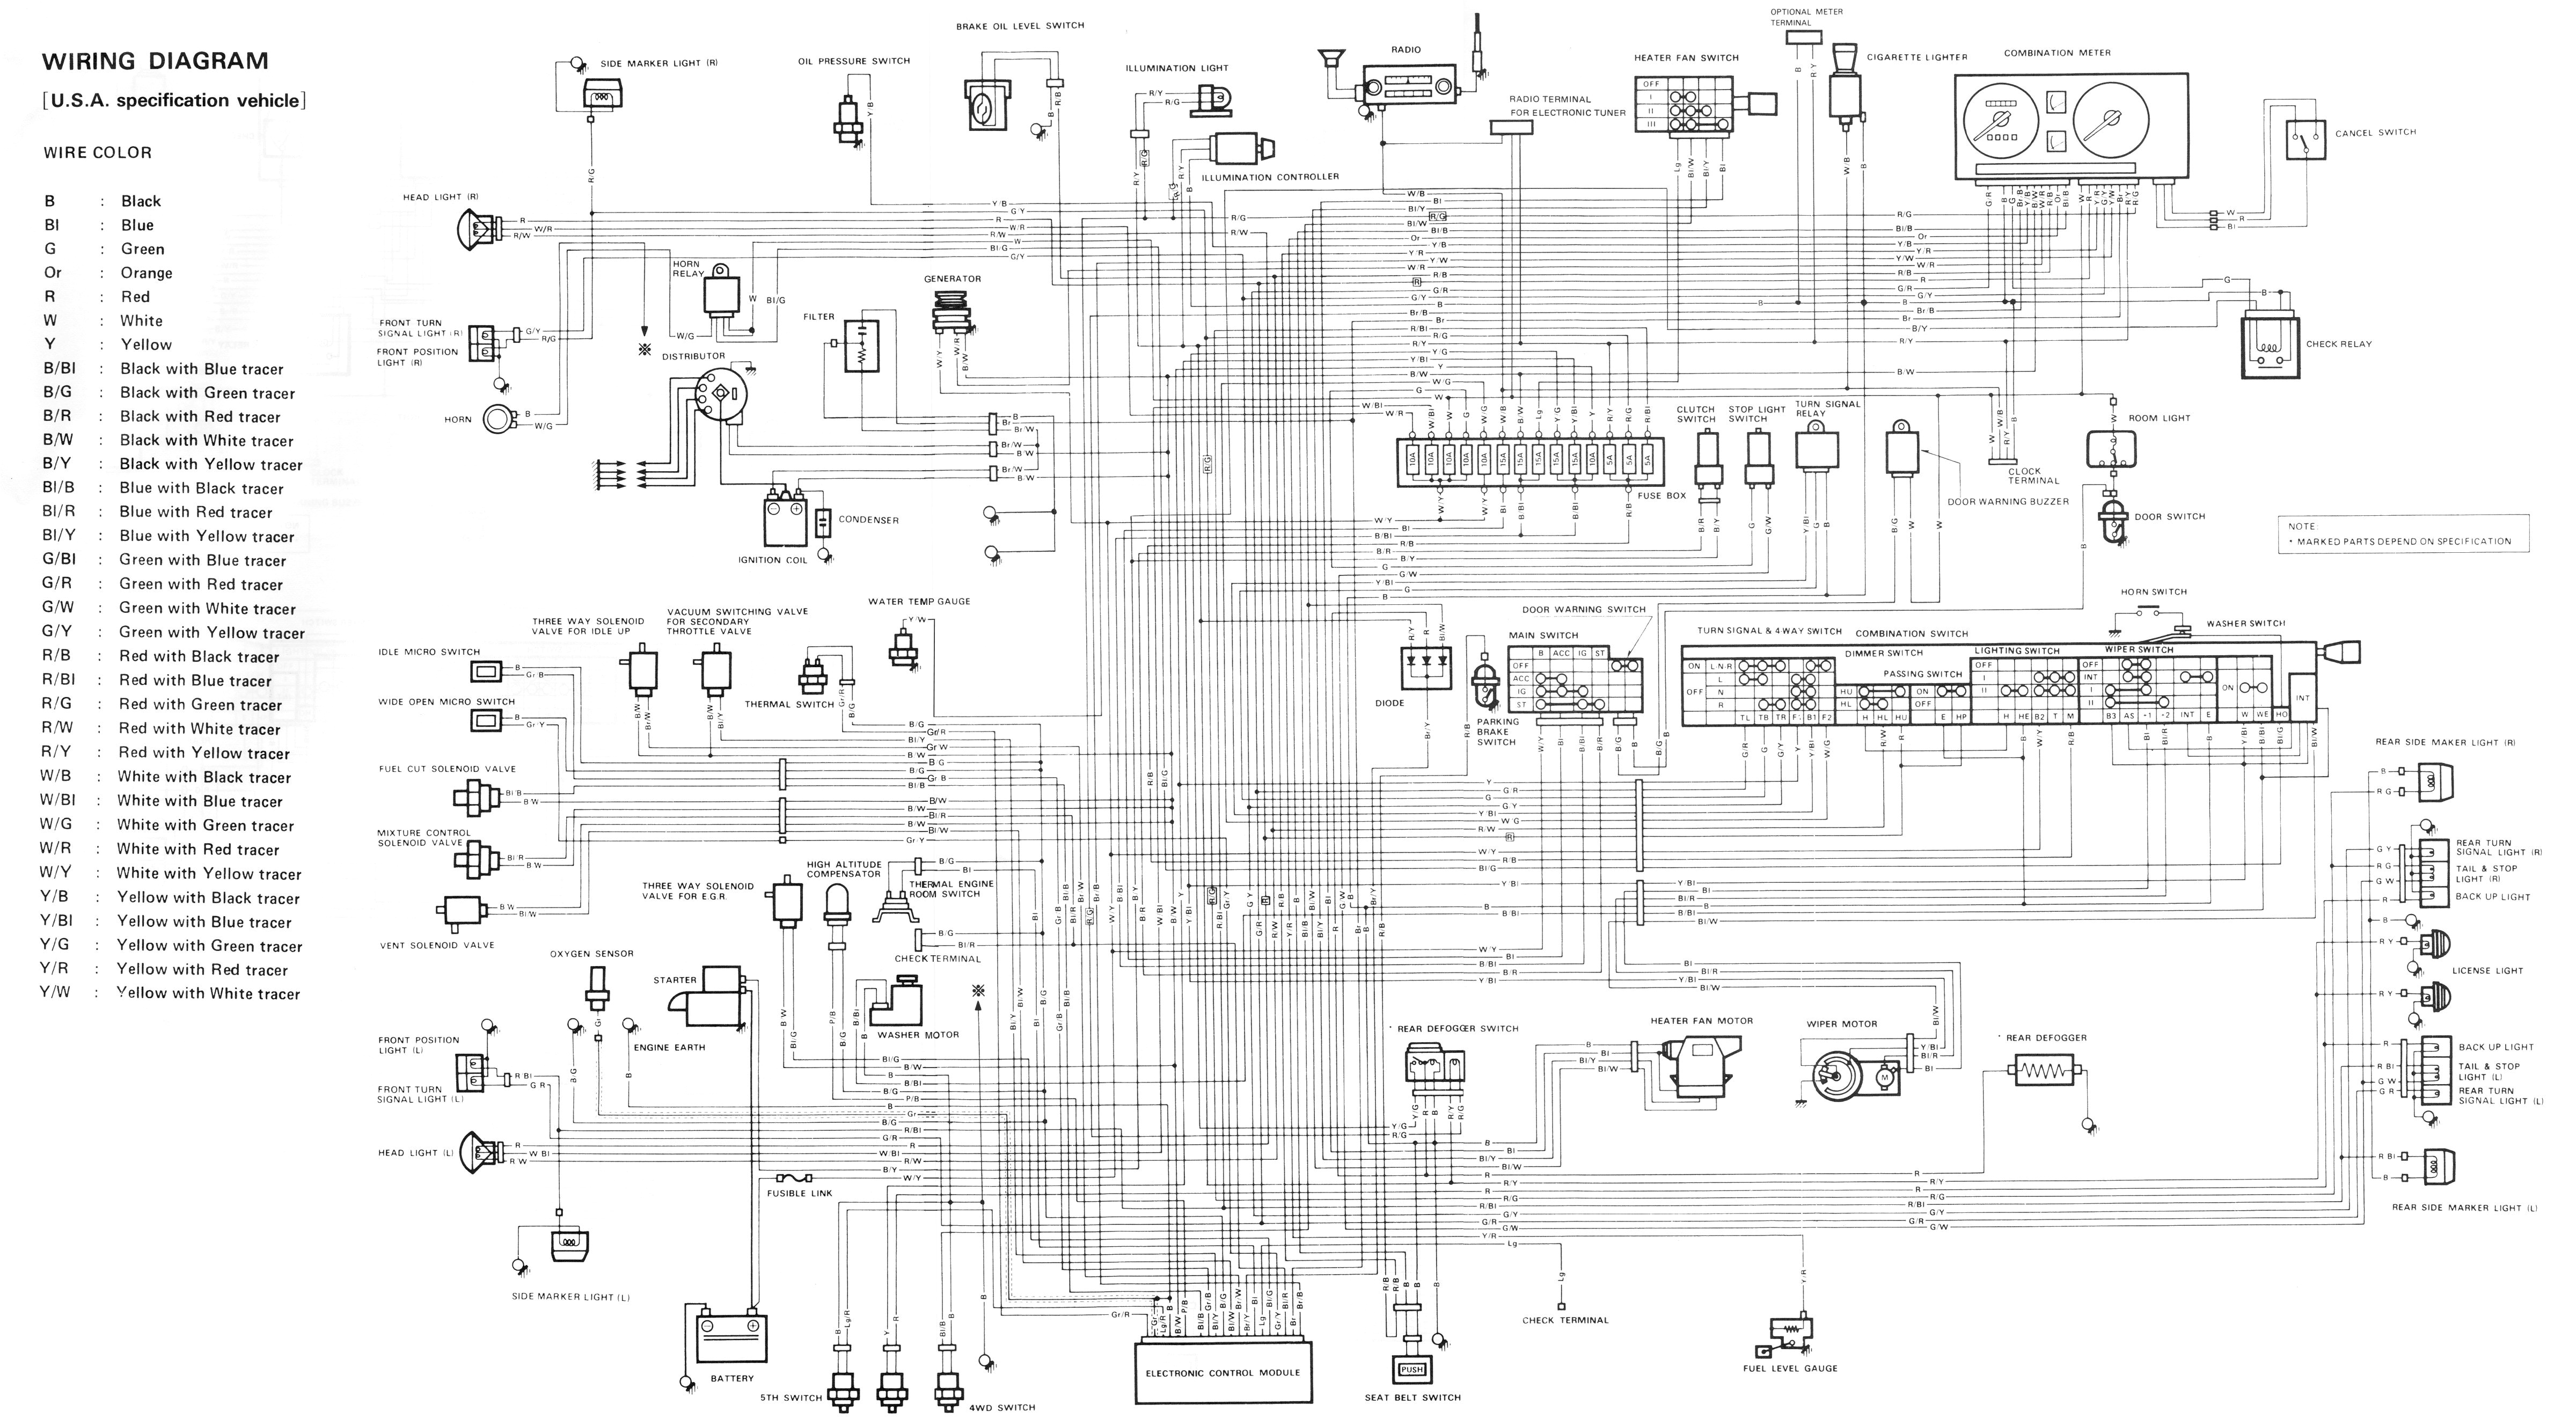 suzuki forenza alternator wiring diagram wiring diagram 1994 suzuki samurai transmission diagram wiring schematic